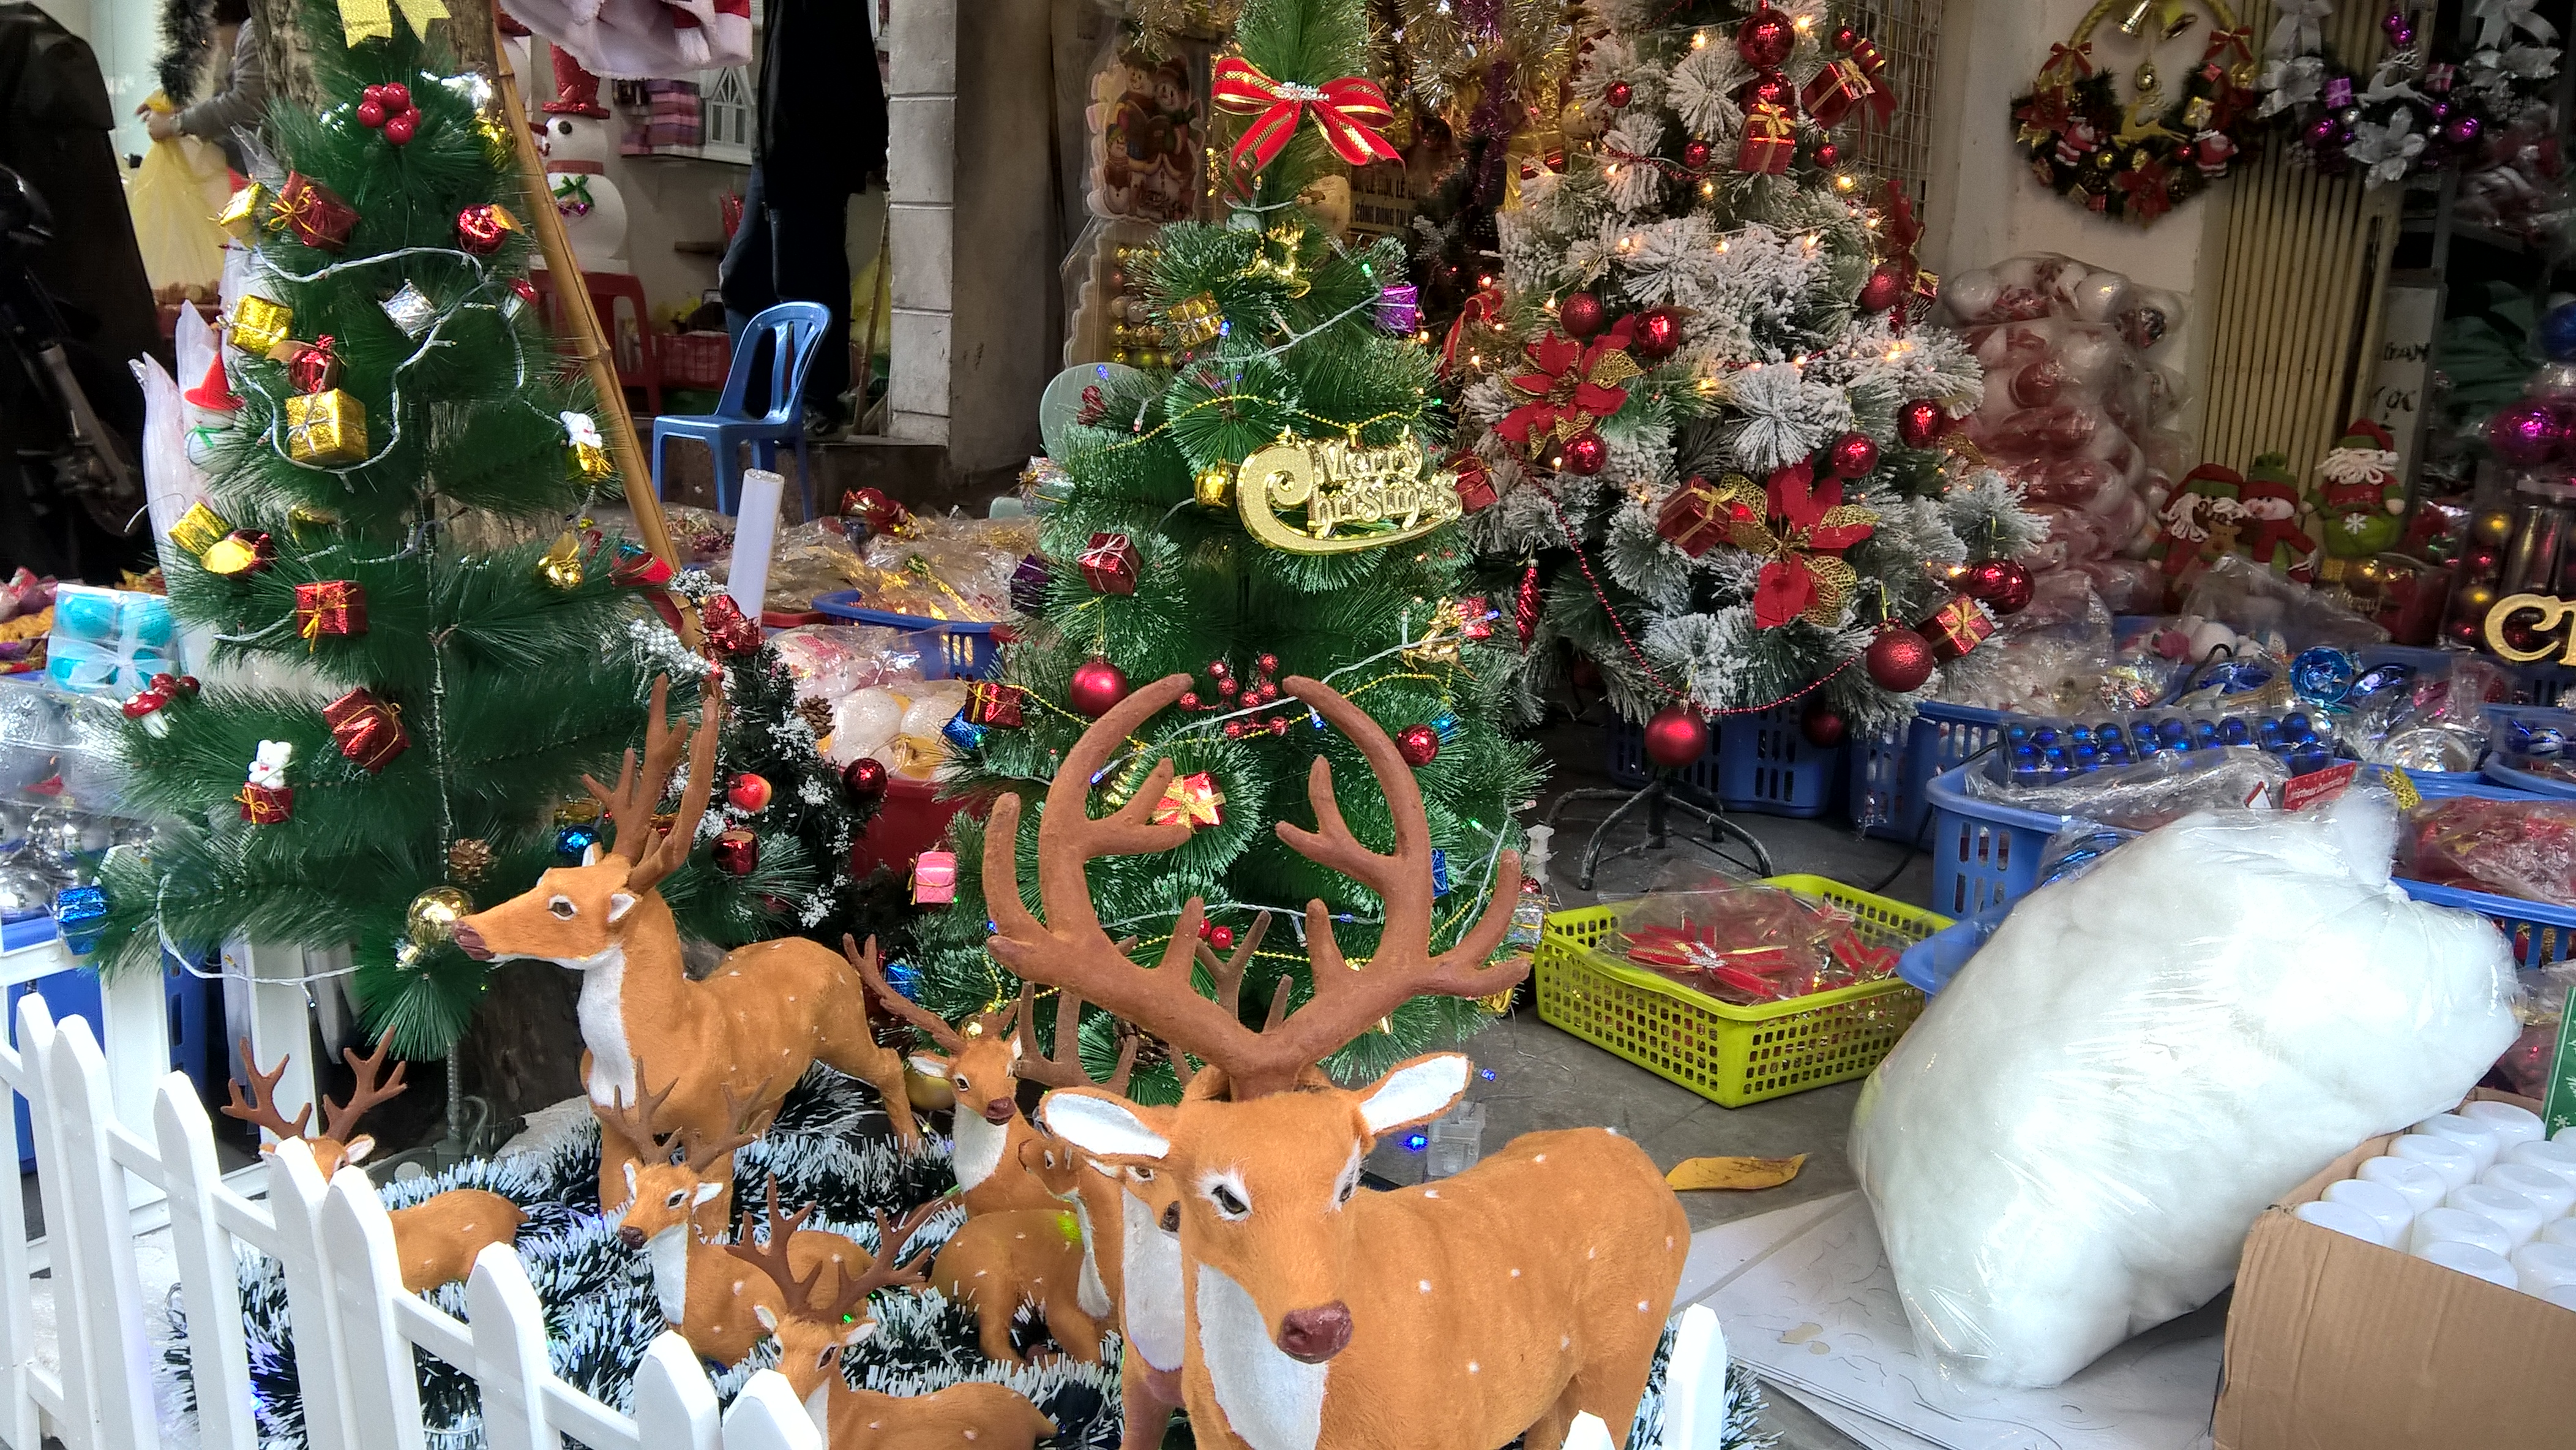 
Những quả thông được phun sơn mạ để làm vật trang trí hoặc kết thành cây thông Noel theo đơn hàng của khách
